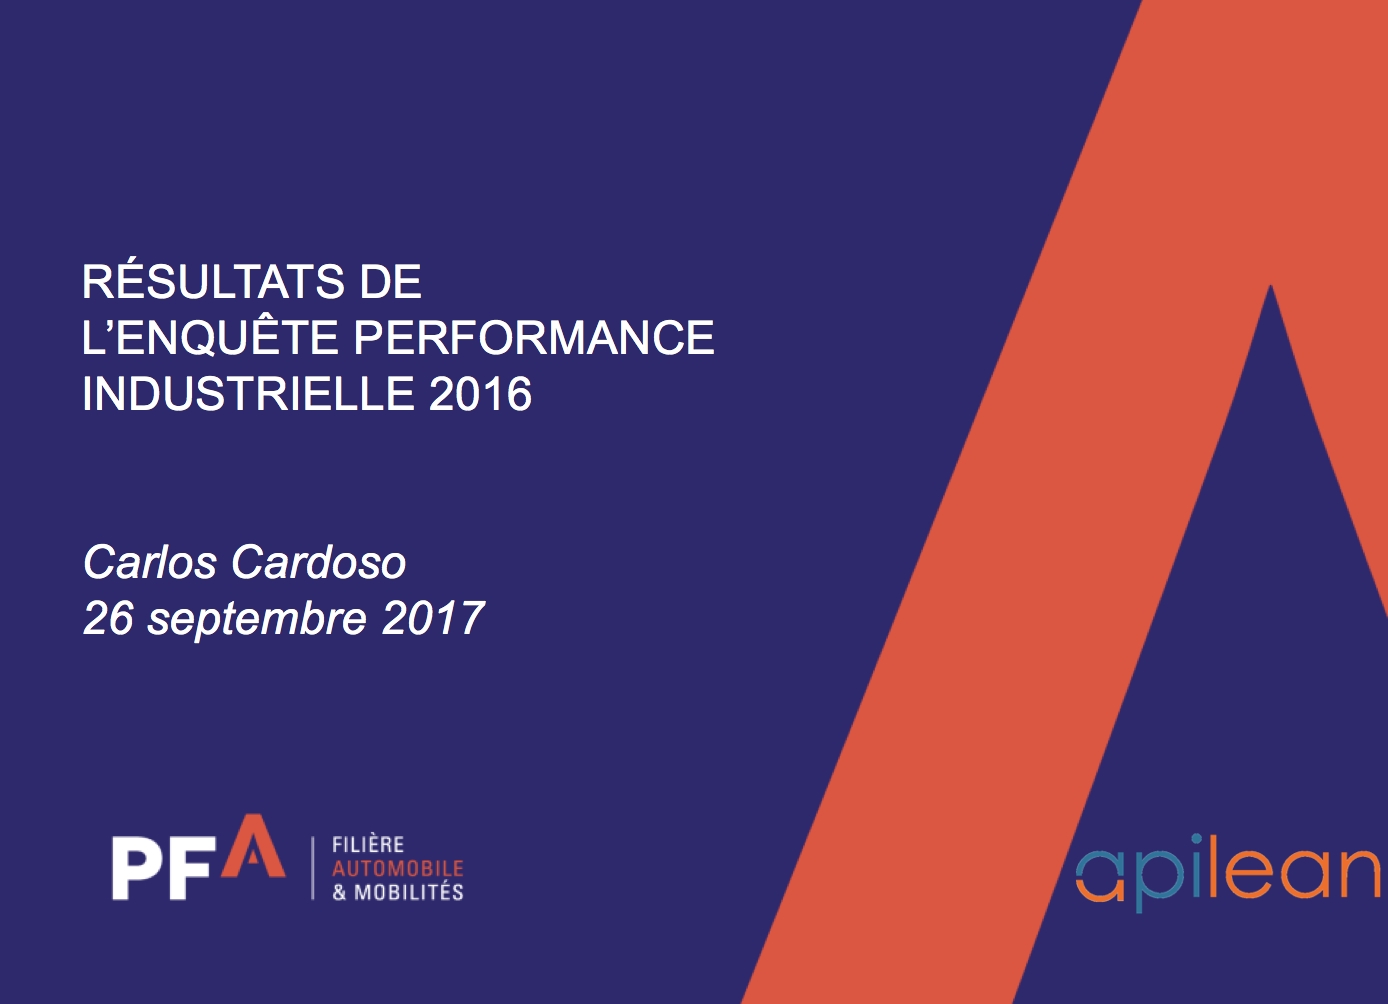 Présentation de l’enquête de performance Industrielle de la filière automobile (PFA) par Carlos Cardoso